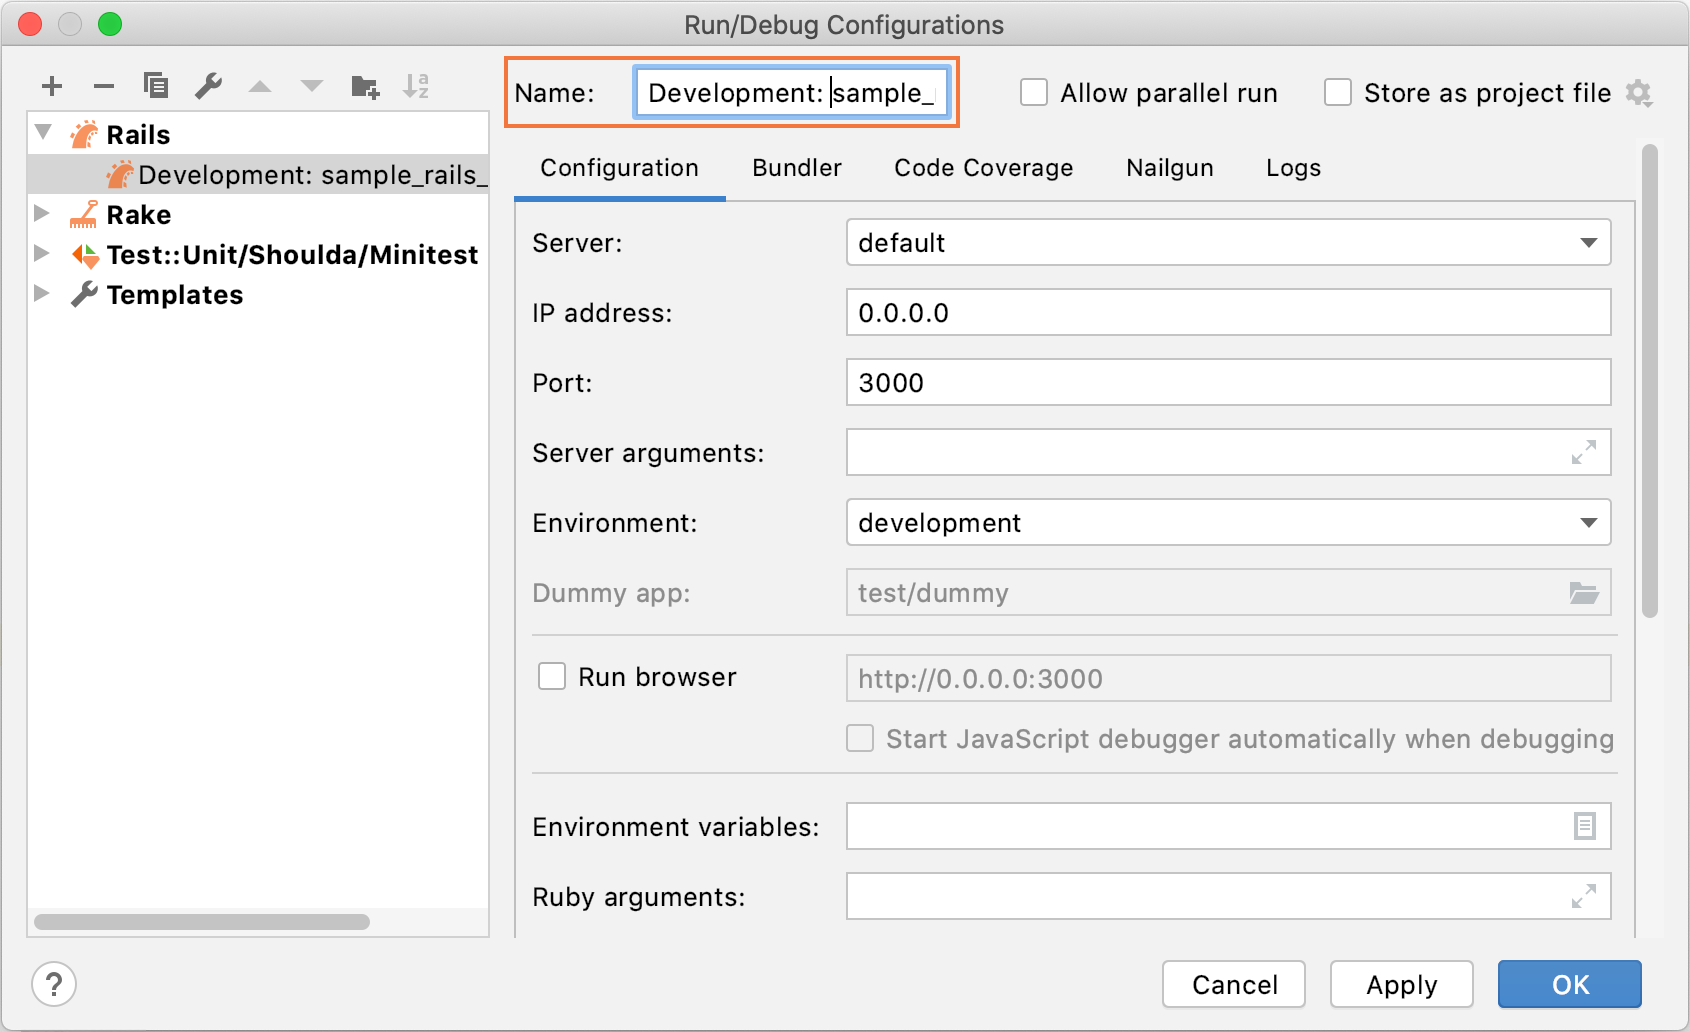 Run/Debug Configurations dialog